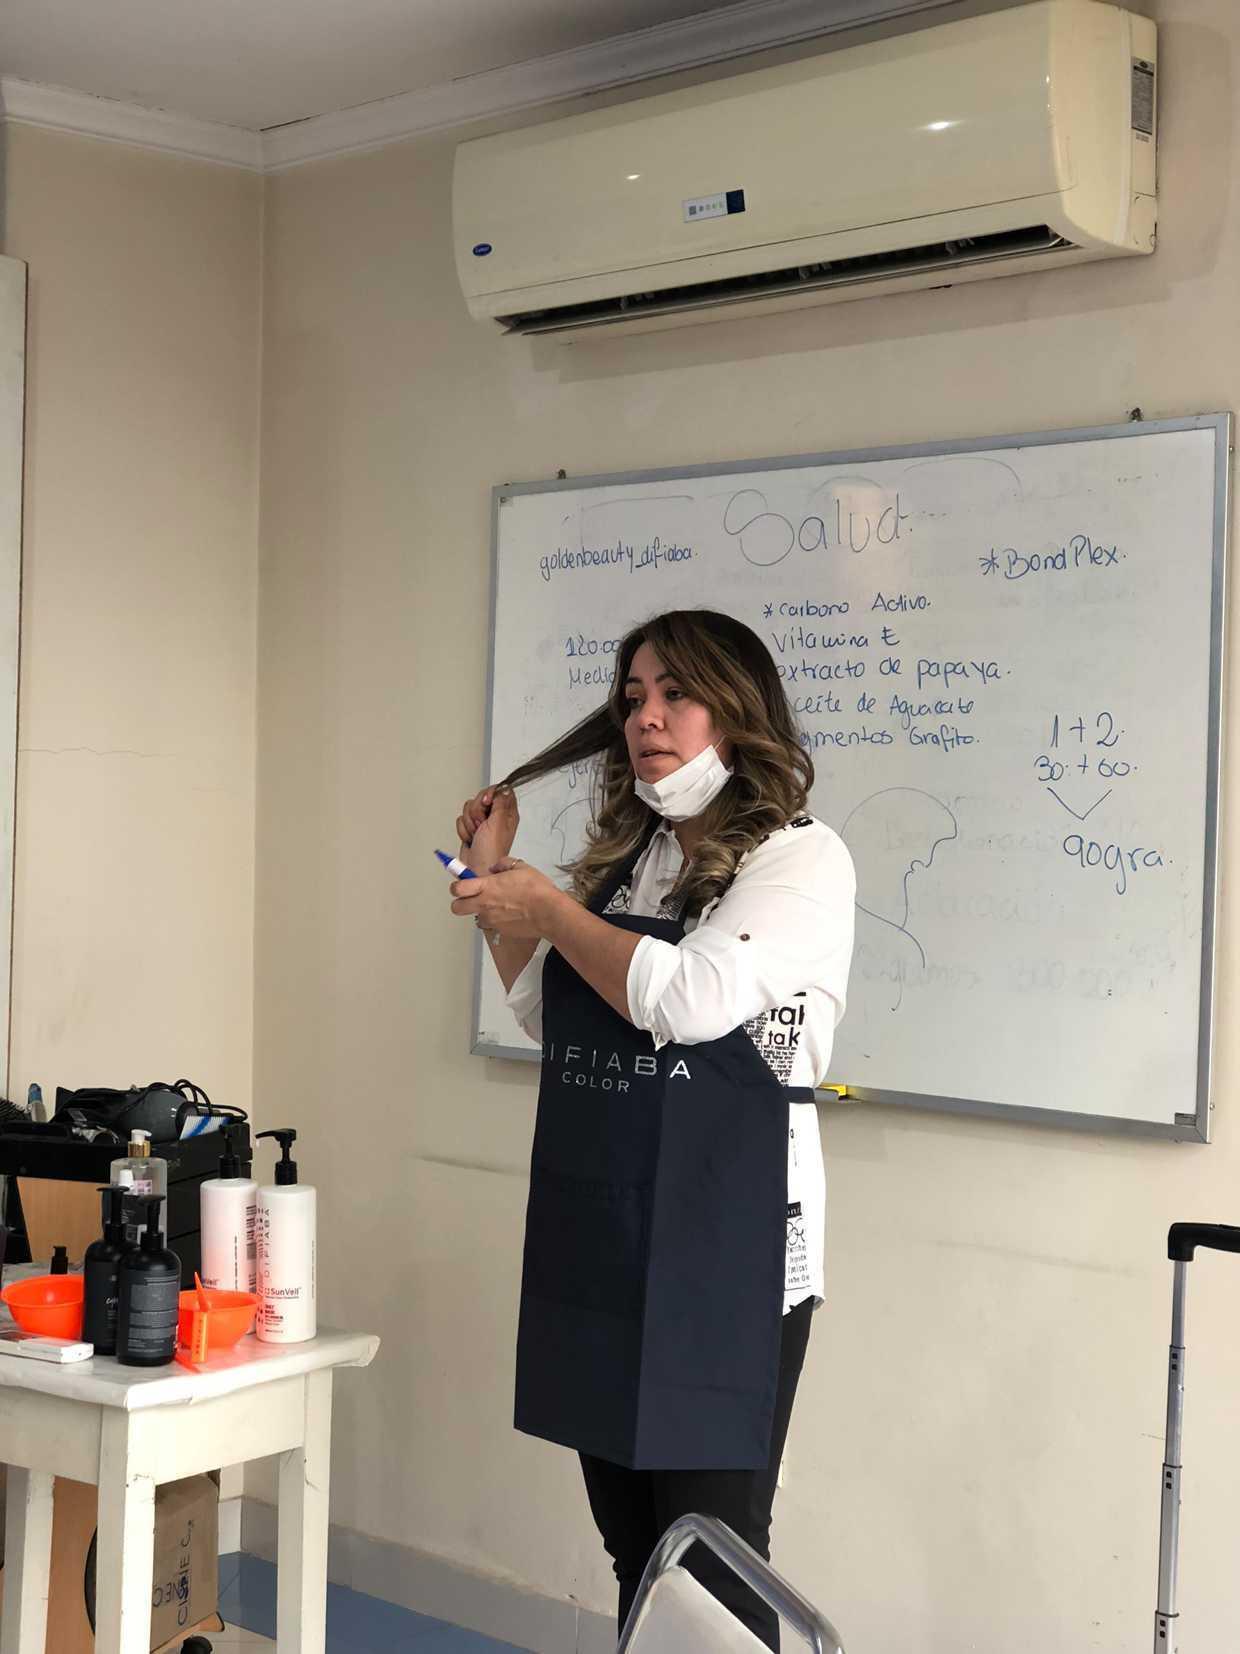 La emprendedora Mirian Brítez vence la recesión generada por la pandemia dentro de su taller de belleza. Foto: Gentileza.